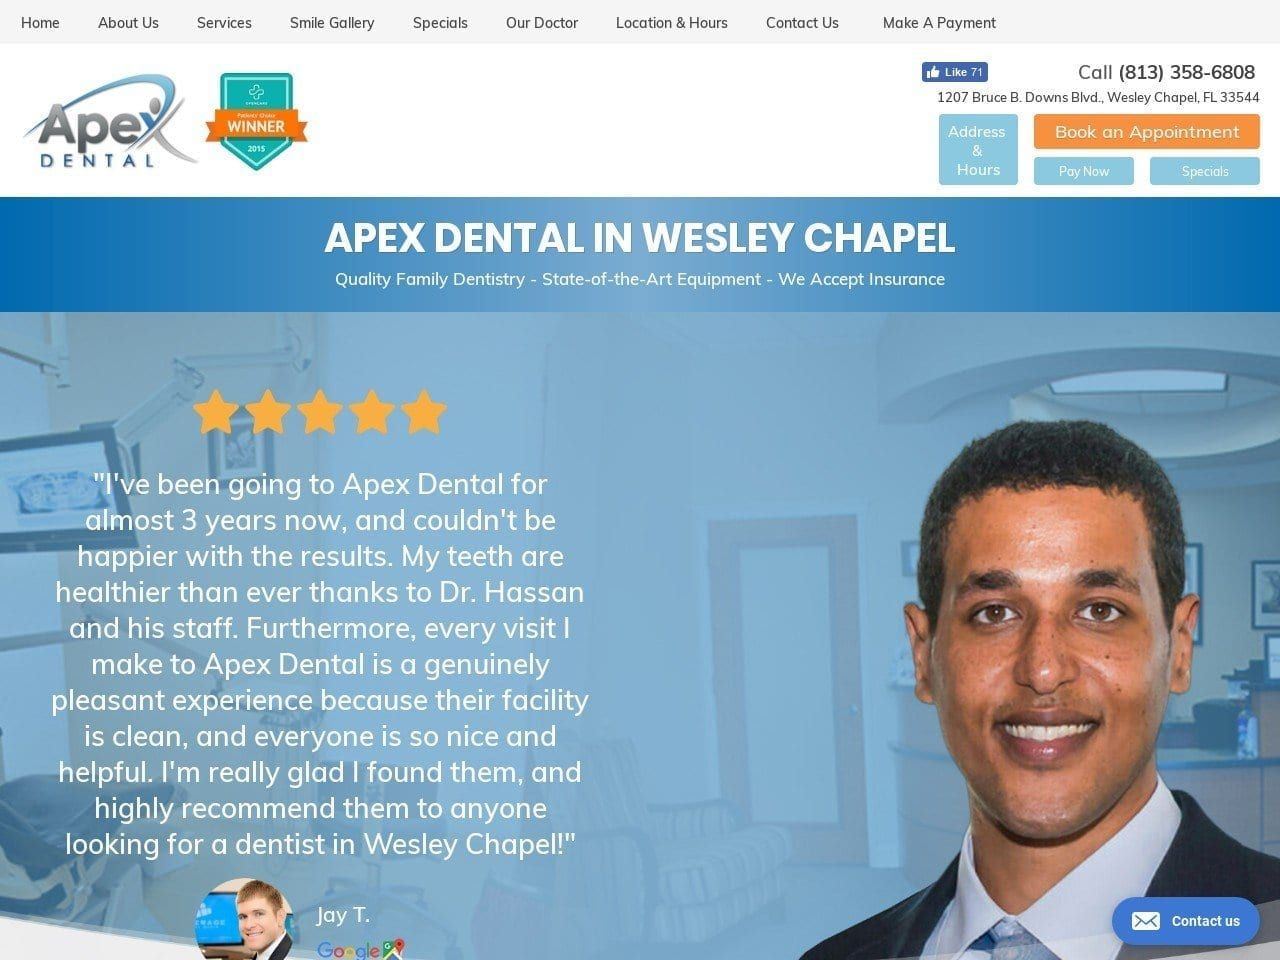 Apex Dental Website Screenshot from apexdental.com